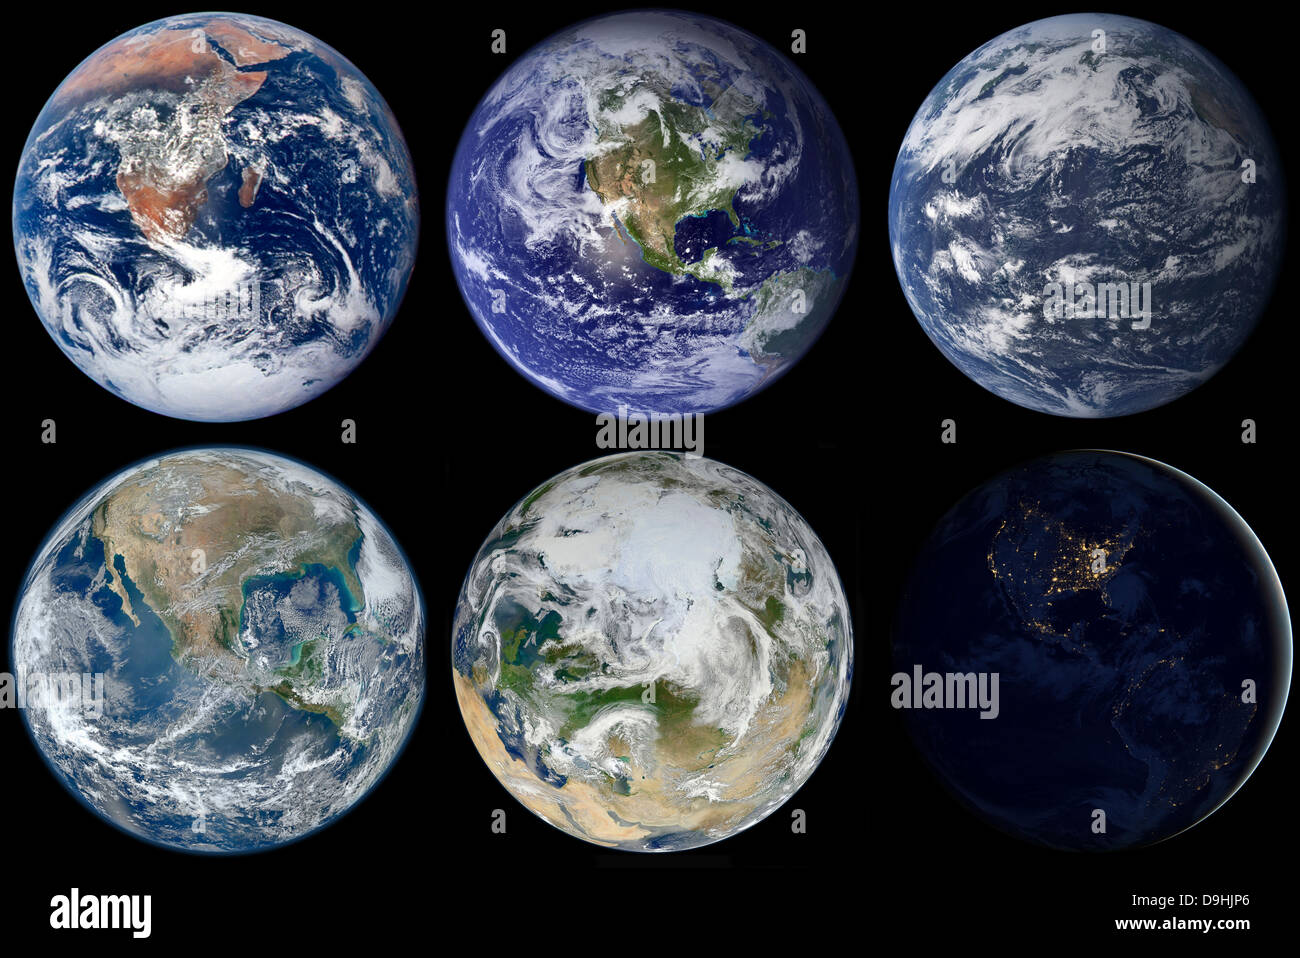 Comparación de imágenes emblemáticas vistas del planeta Tierra. Foto de stock